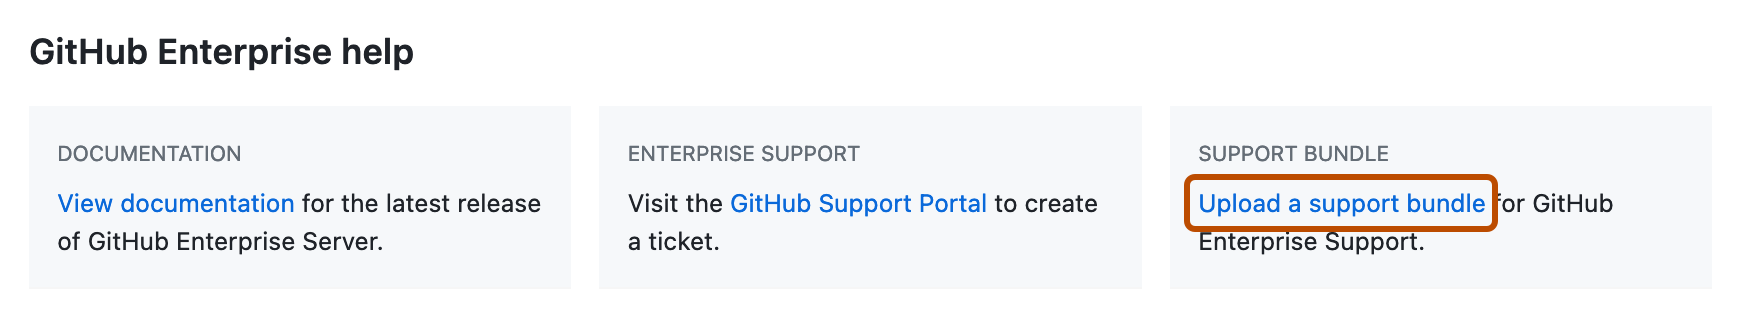 엔터프라이즈 설정 페이지의 "GitHub Enterprise 도움말" 섹션 스크린샷 "지원 번들 업로드 링크"가 진한 주황색 사각형으로 강조 표시됩니다.